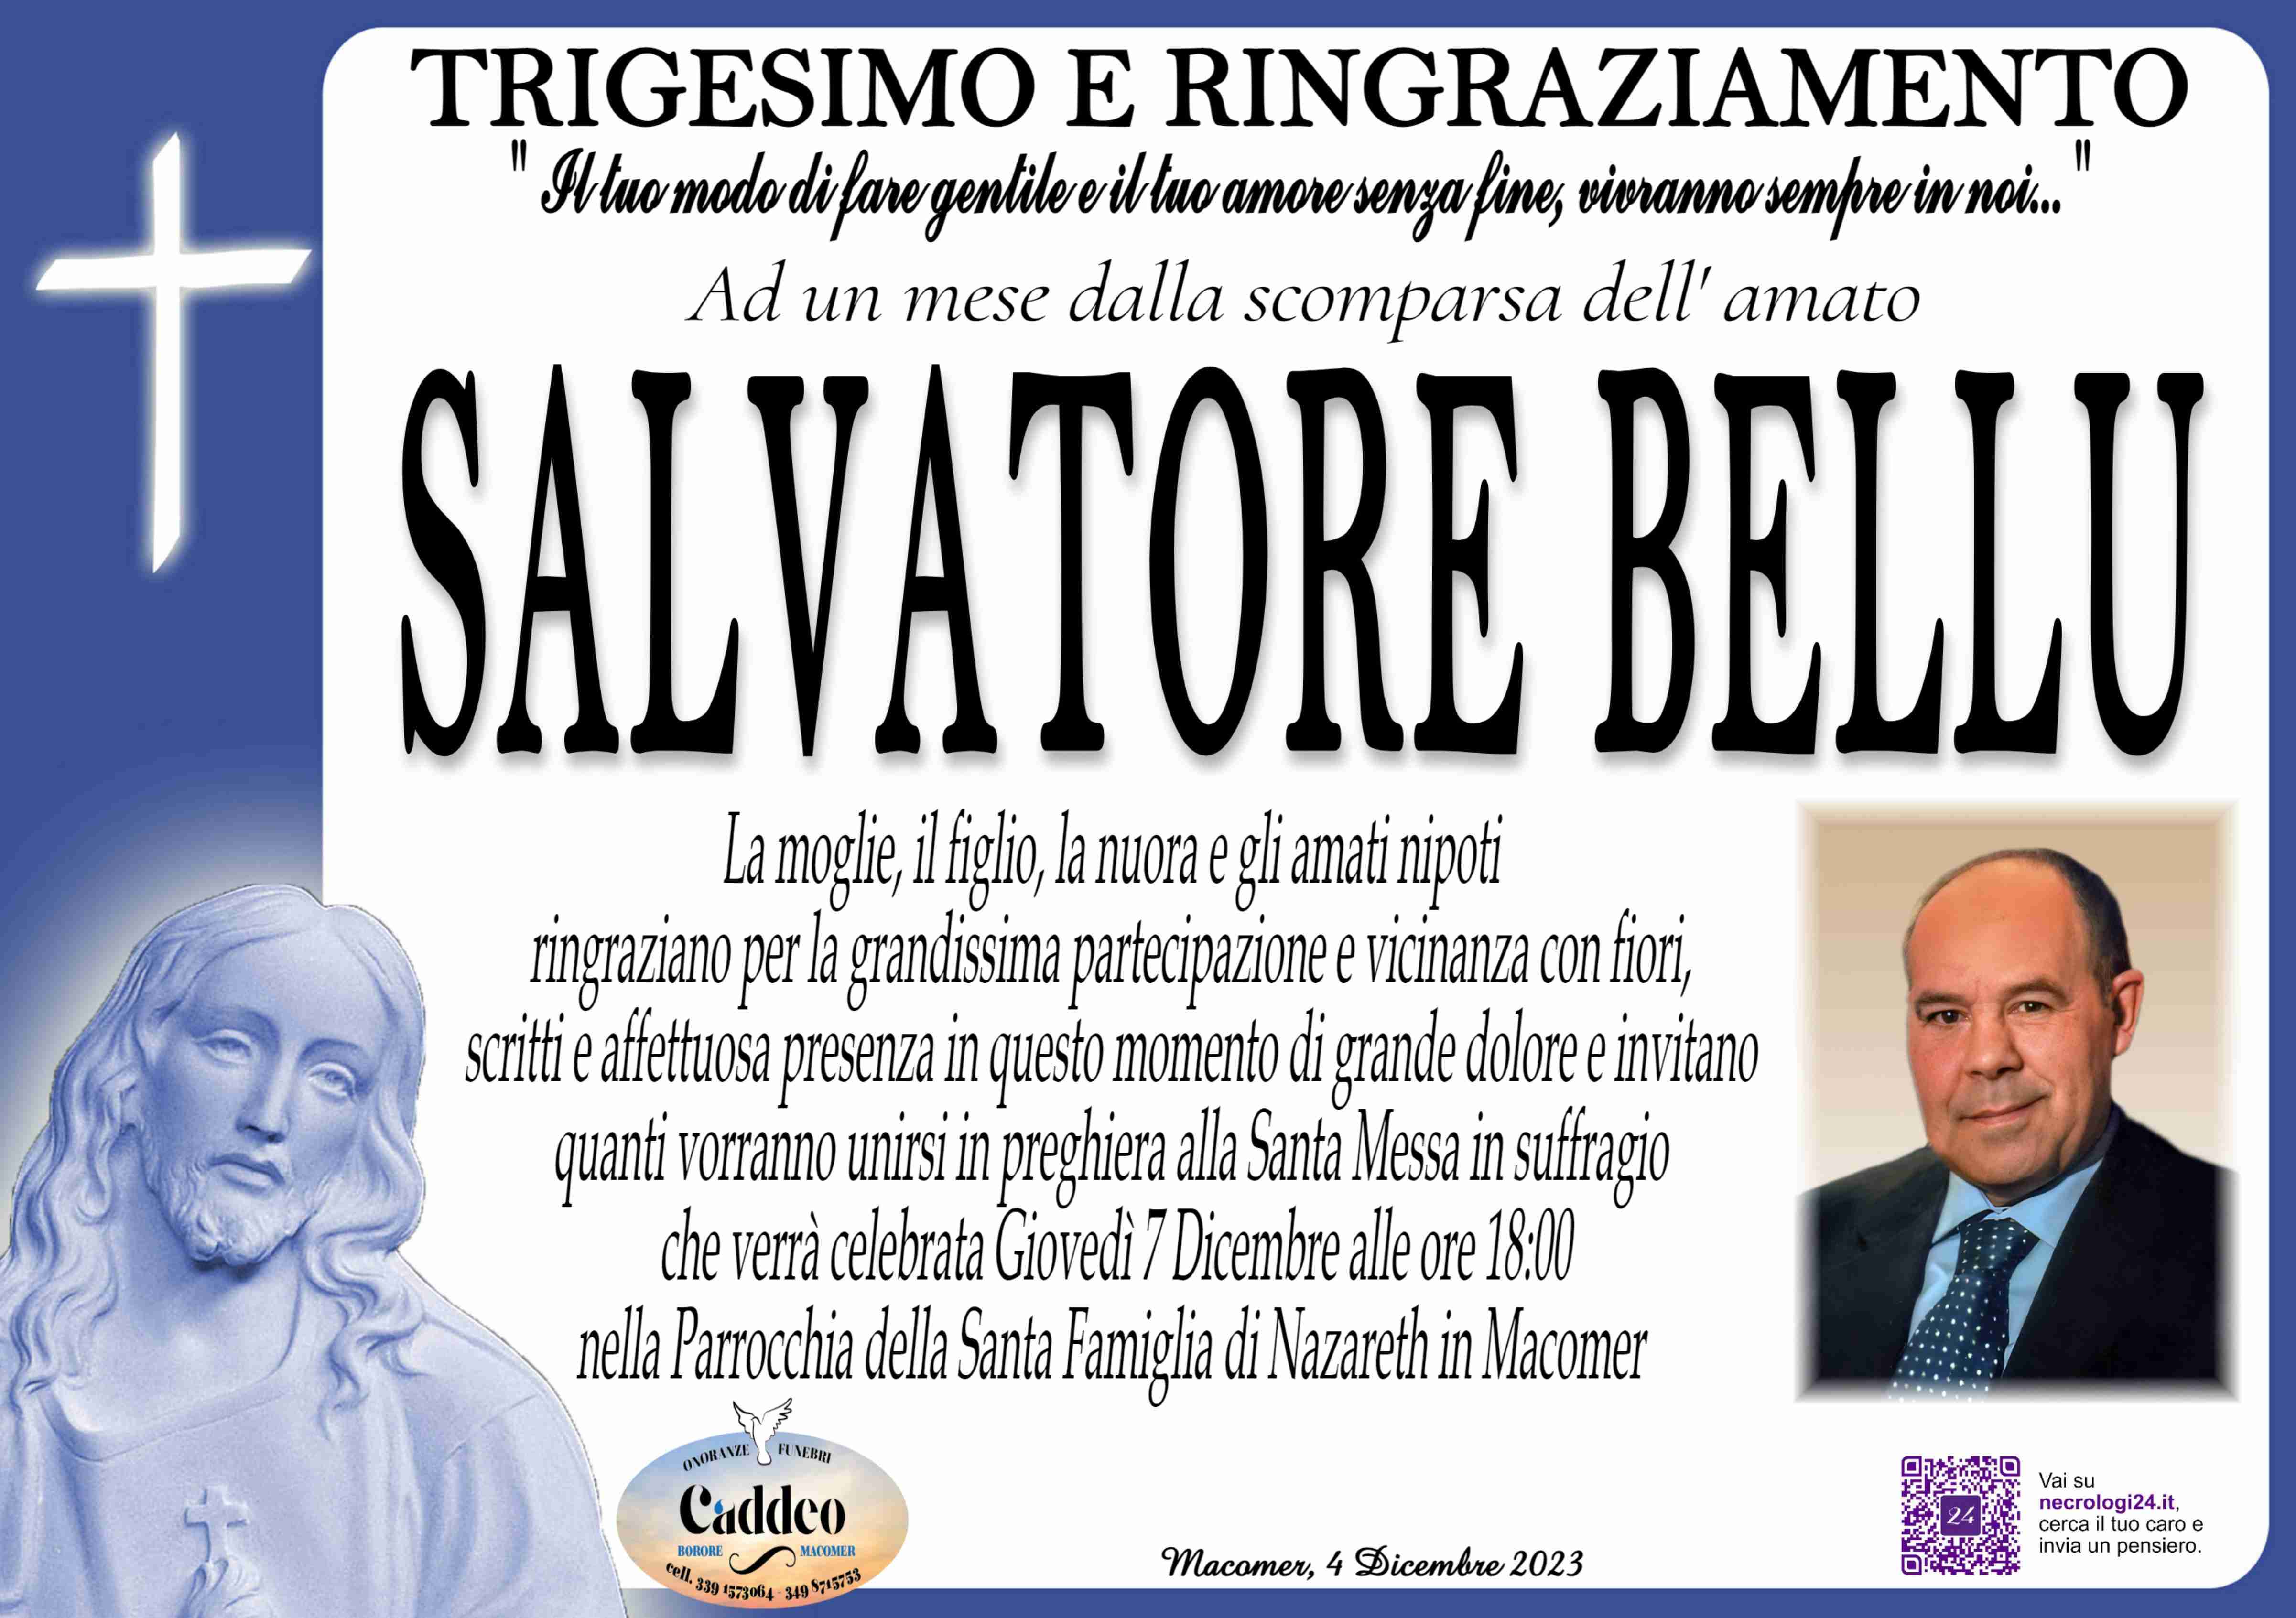 Salvatore Bellu